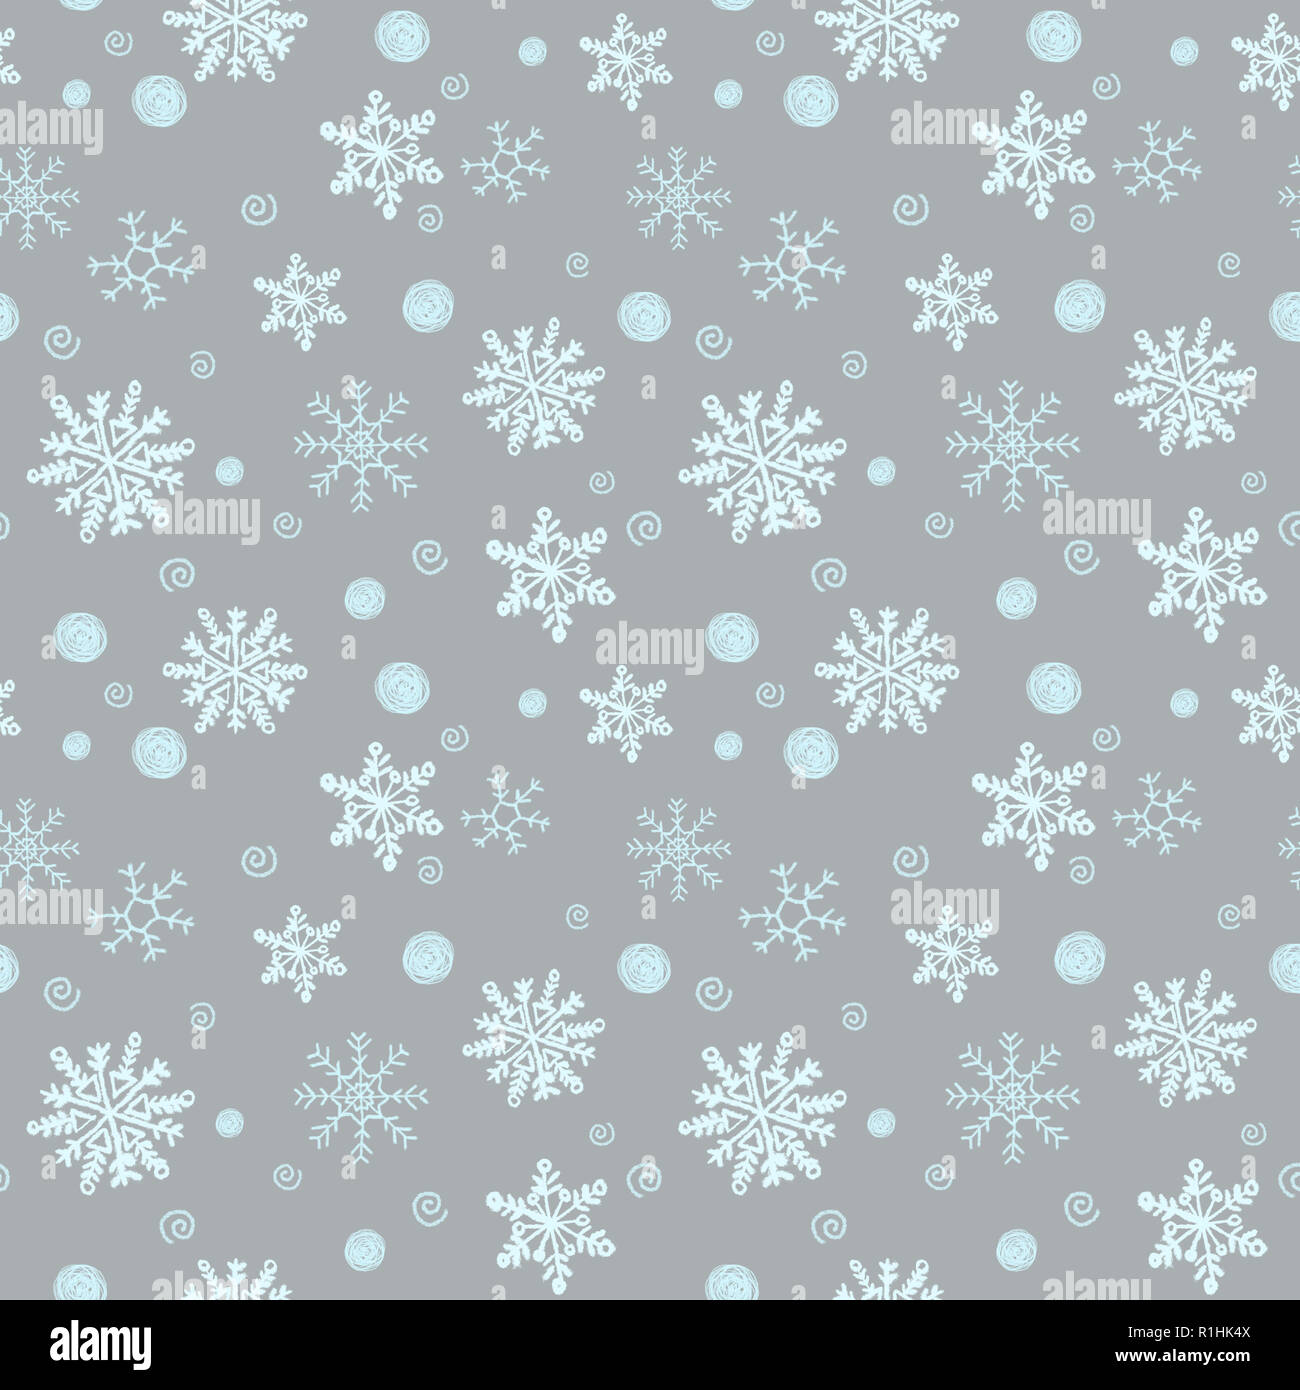 Winter Weihnachten nahtlose Muster, festlich. Fallenden Schnee,  Schneeflocken, curlicues, Schnee Kugeln. Für Geschenkverpackung geeignet,  Stoff Design, Verpackung Wand Stockfotografie - Alamy